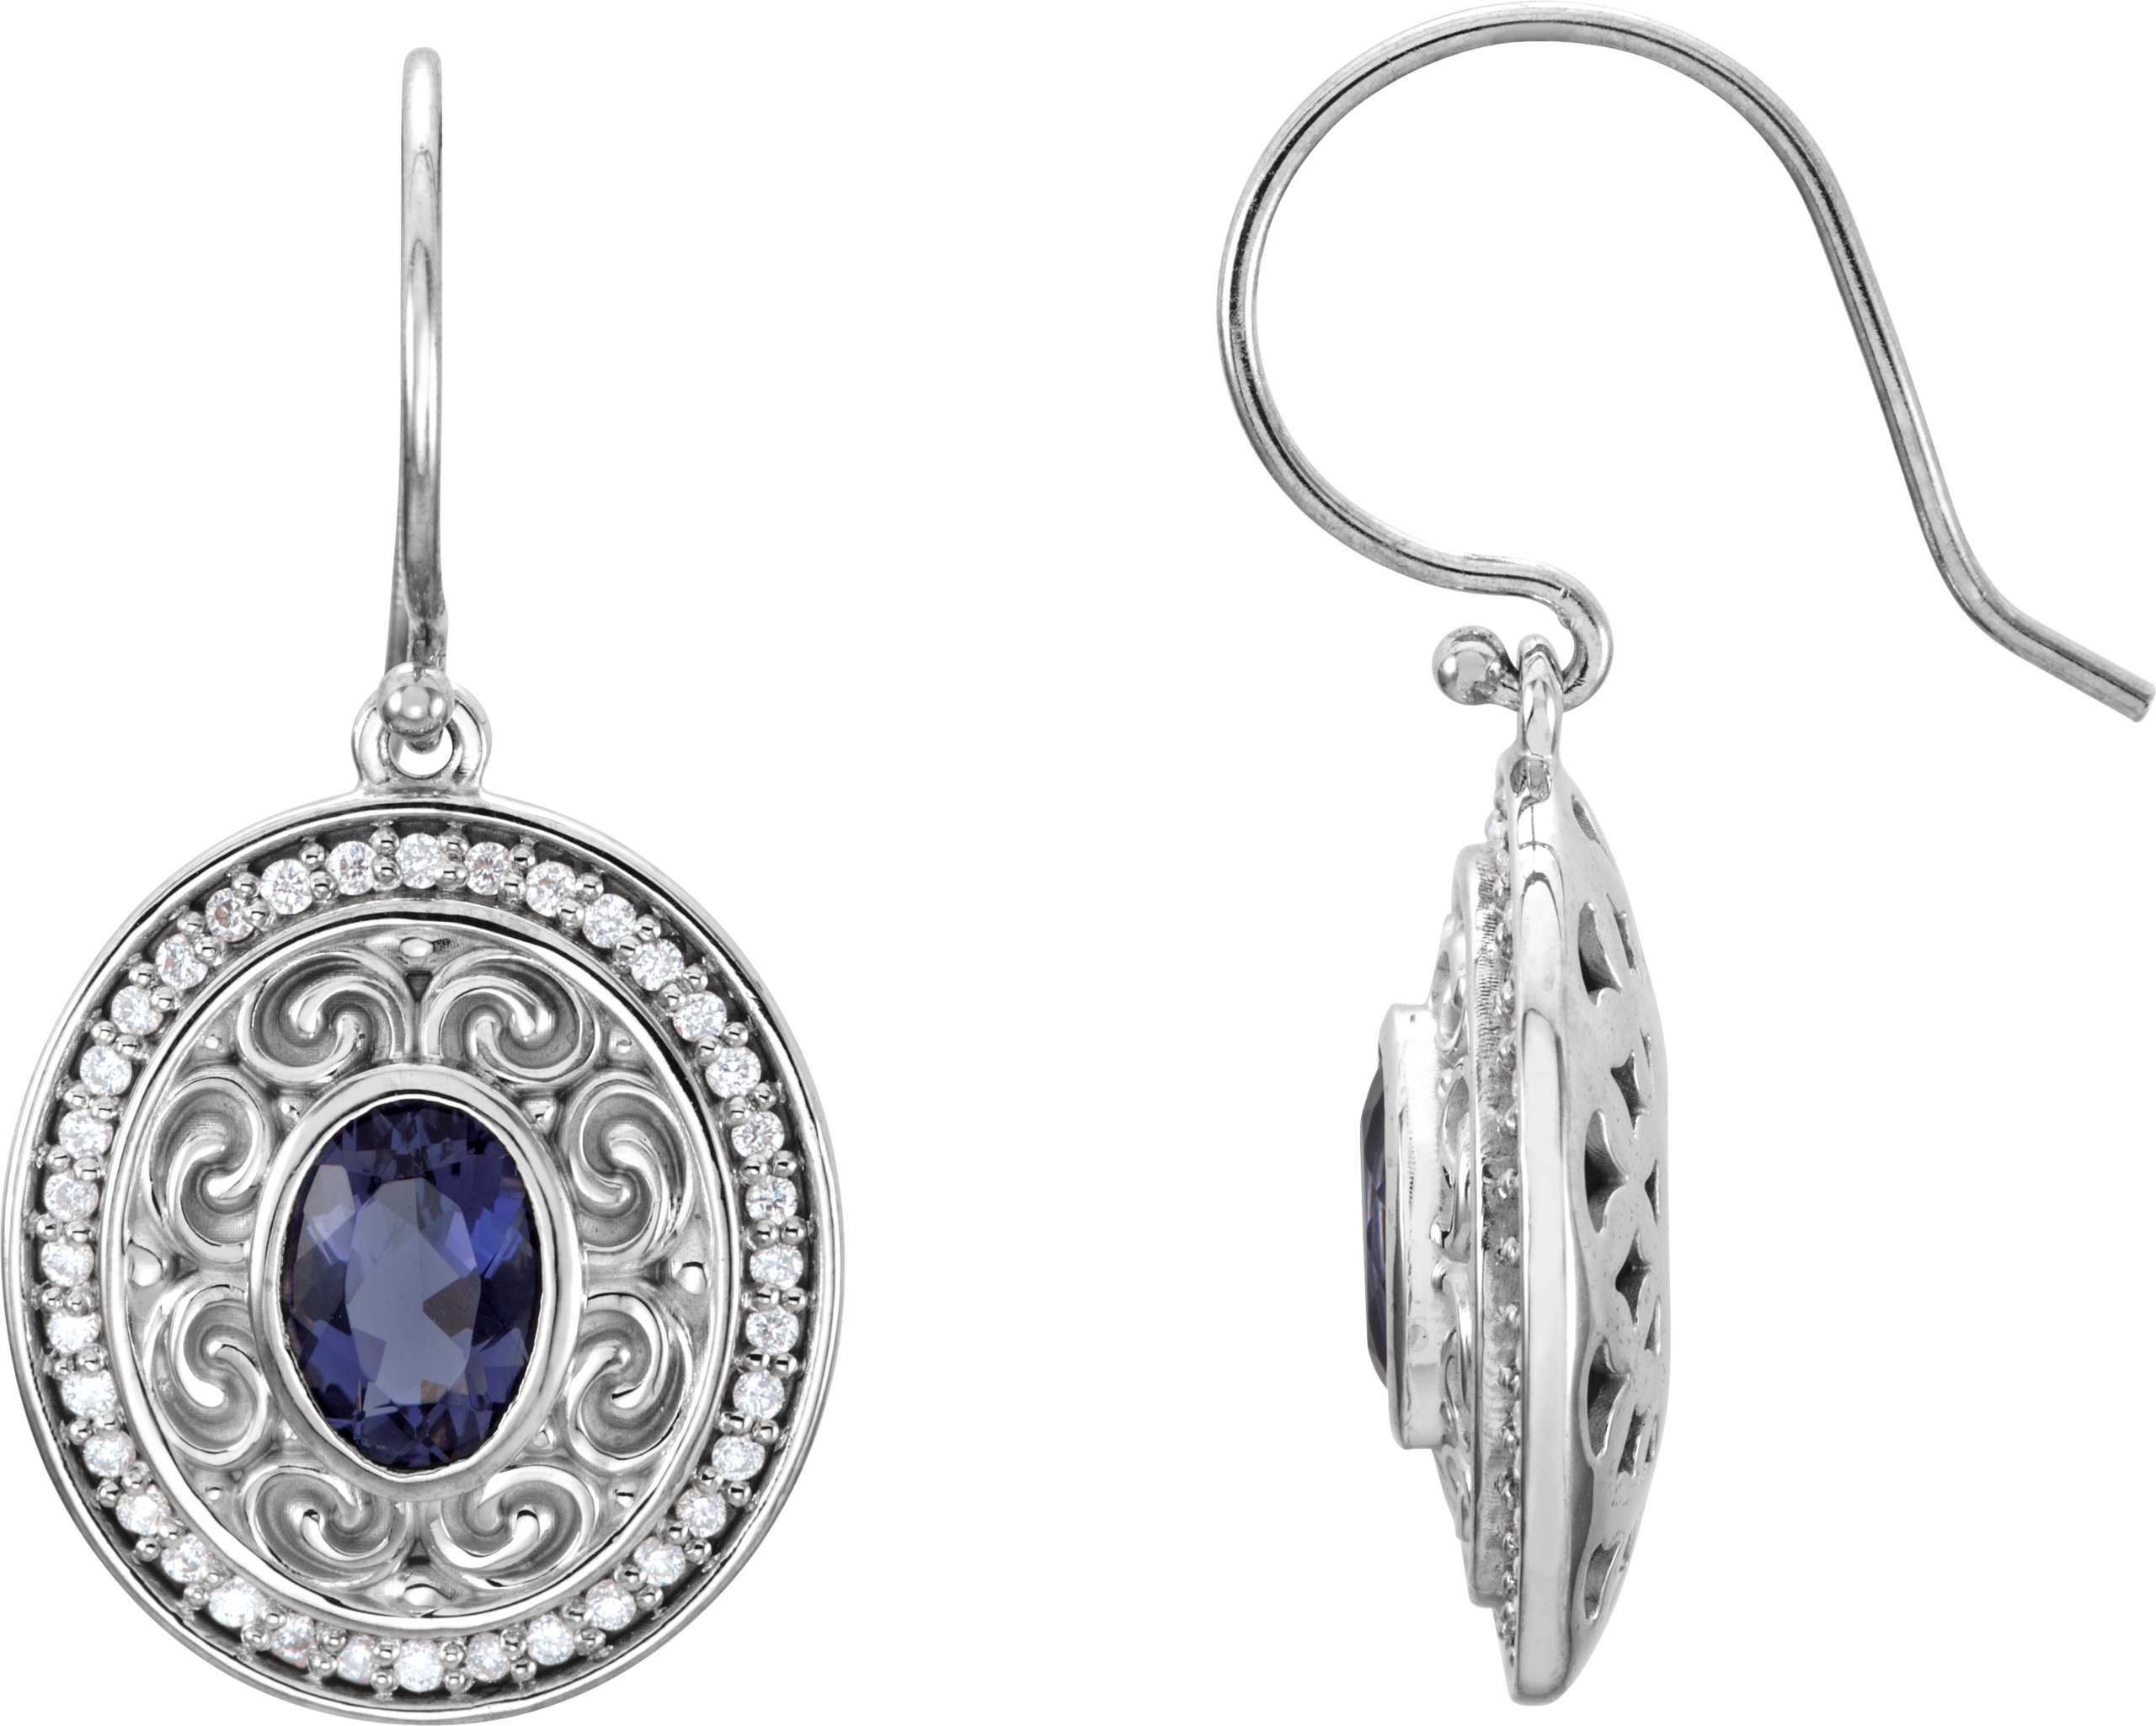 Gemstone & Diamond Earrings or Mounting